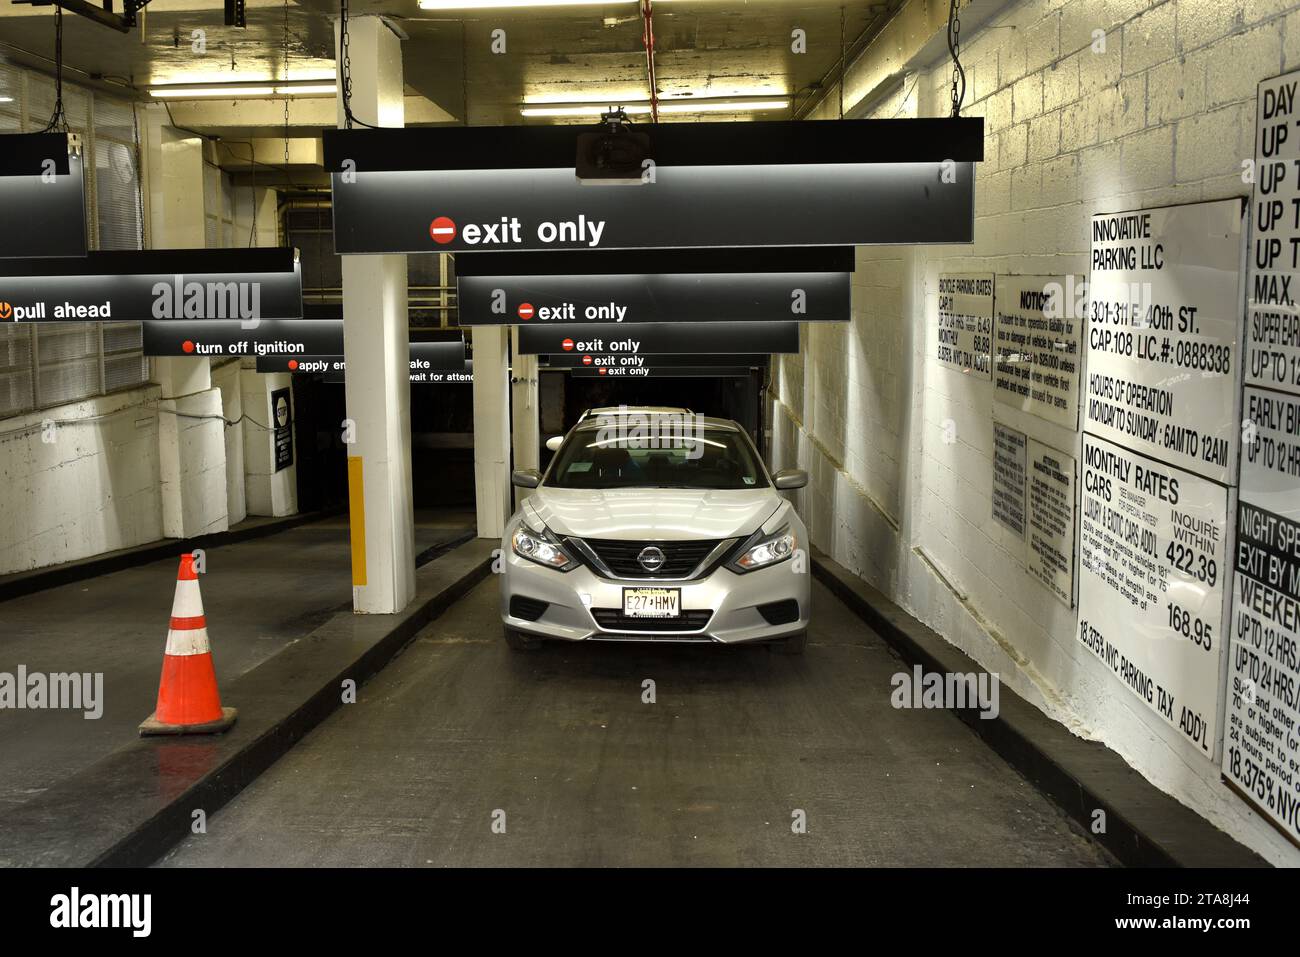 New York, USA - 24 maggio 2018: Cars in the Icon Parking nel centro di Manhattan. Foto Stock